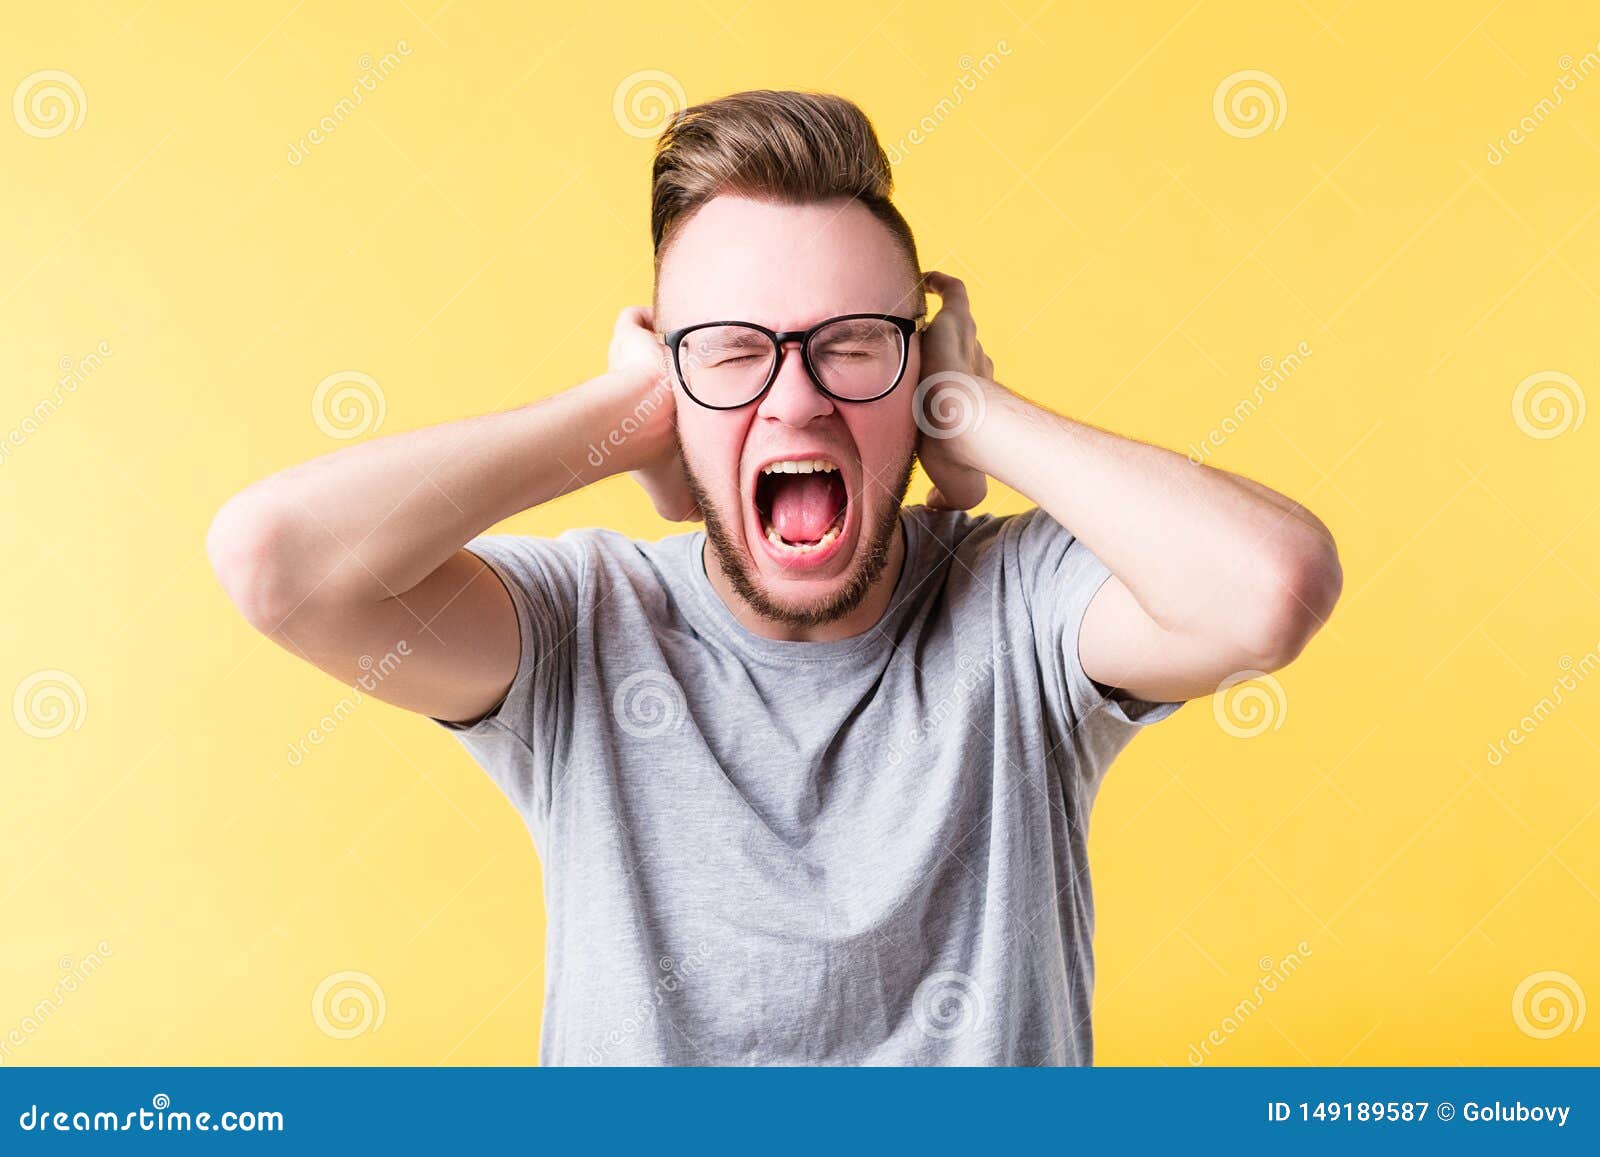 stress tension man yelling screaming emotion